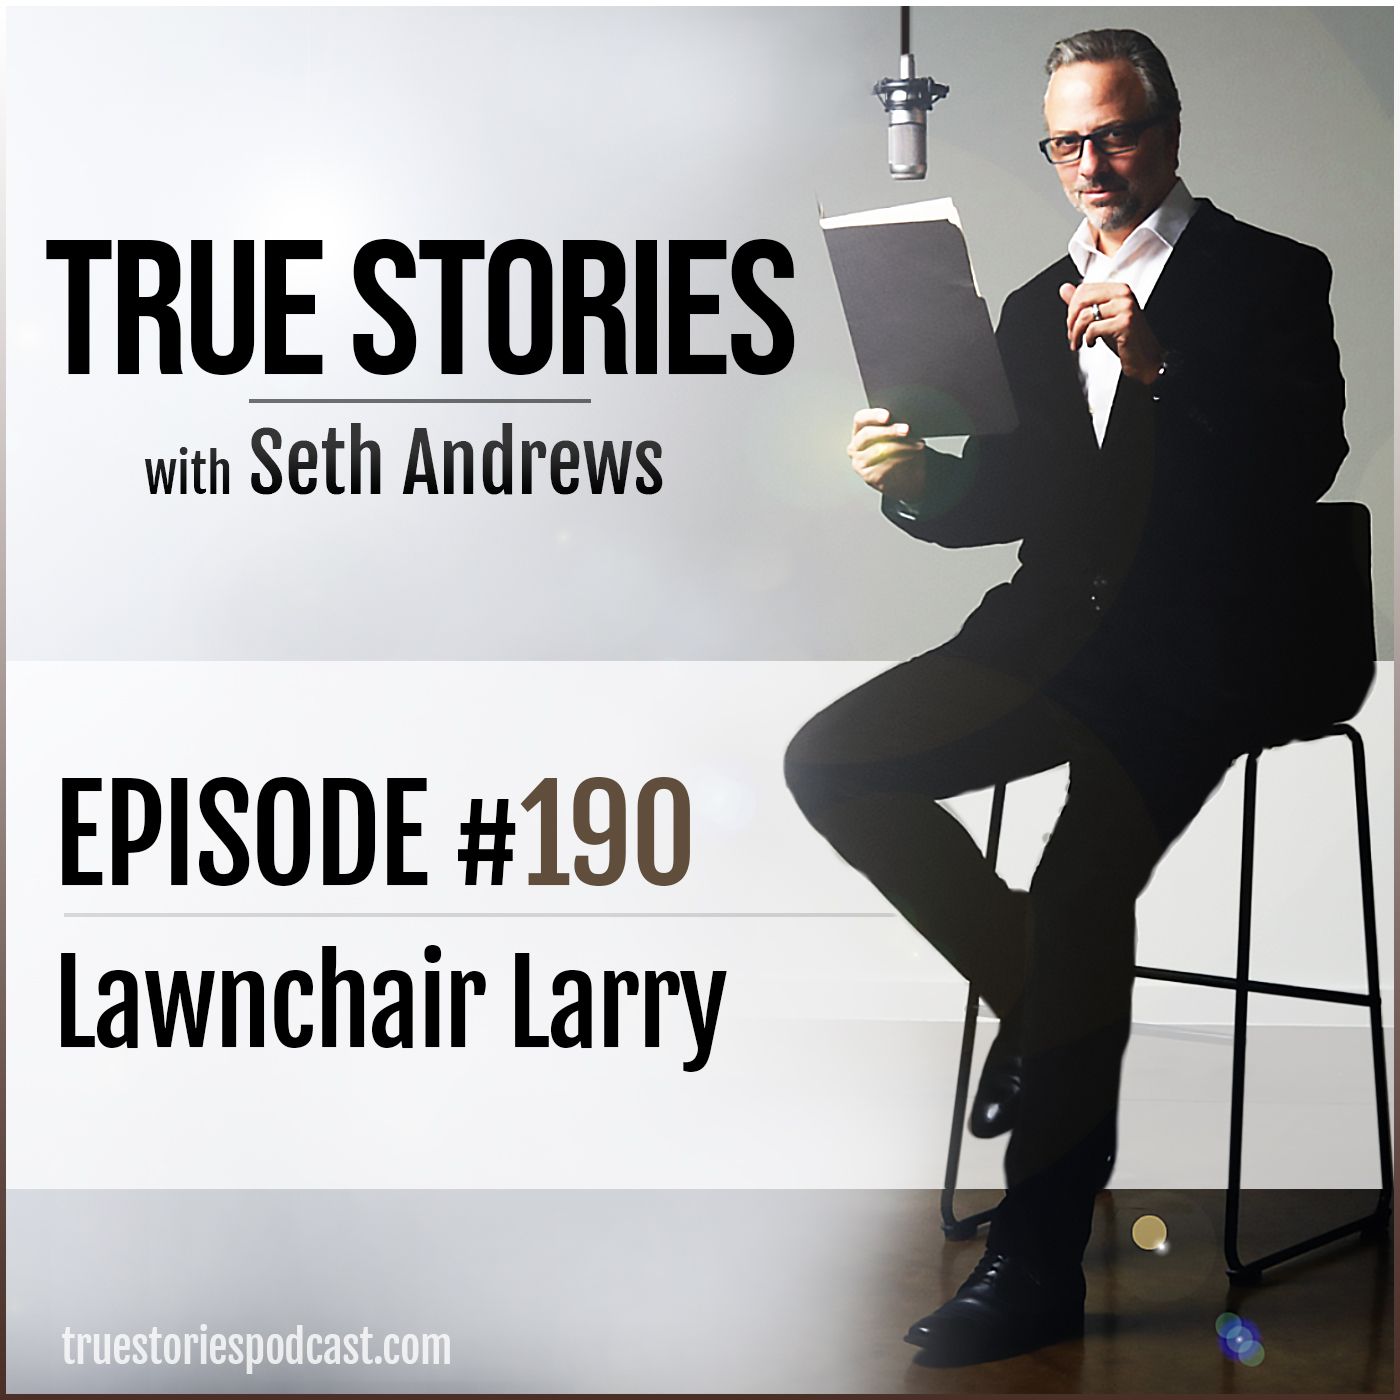 True Stories #190 - Lawnchair Larry